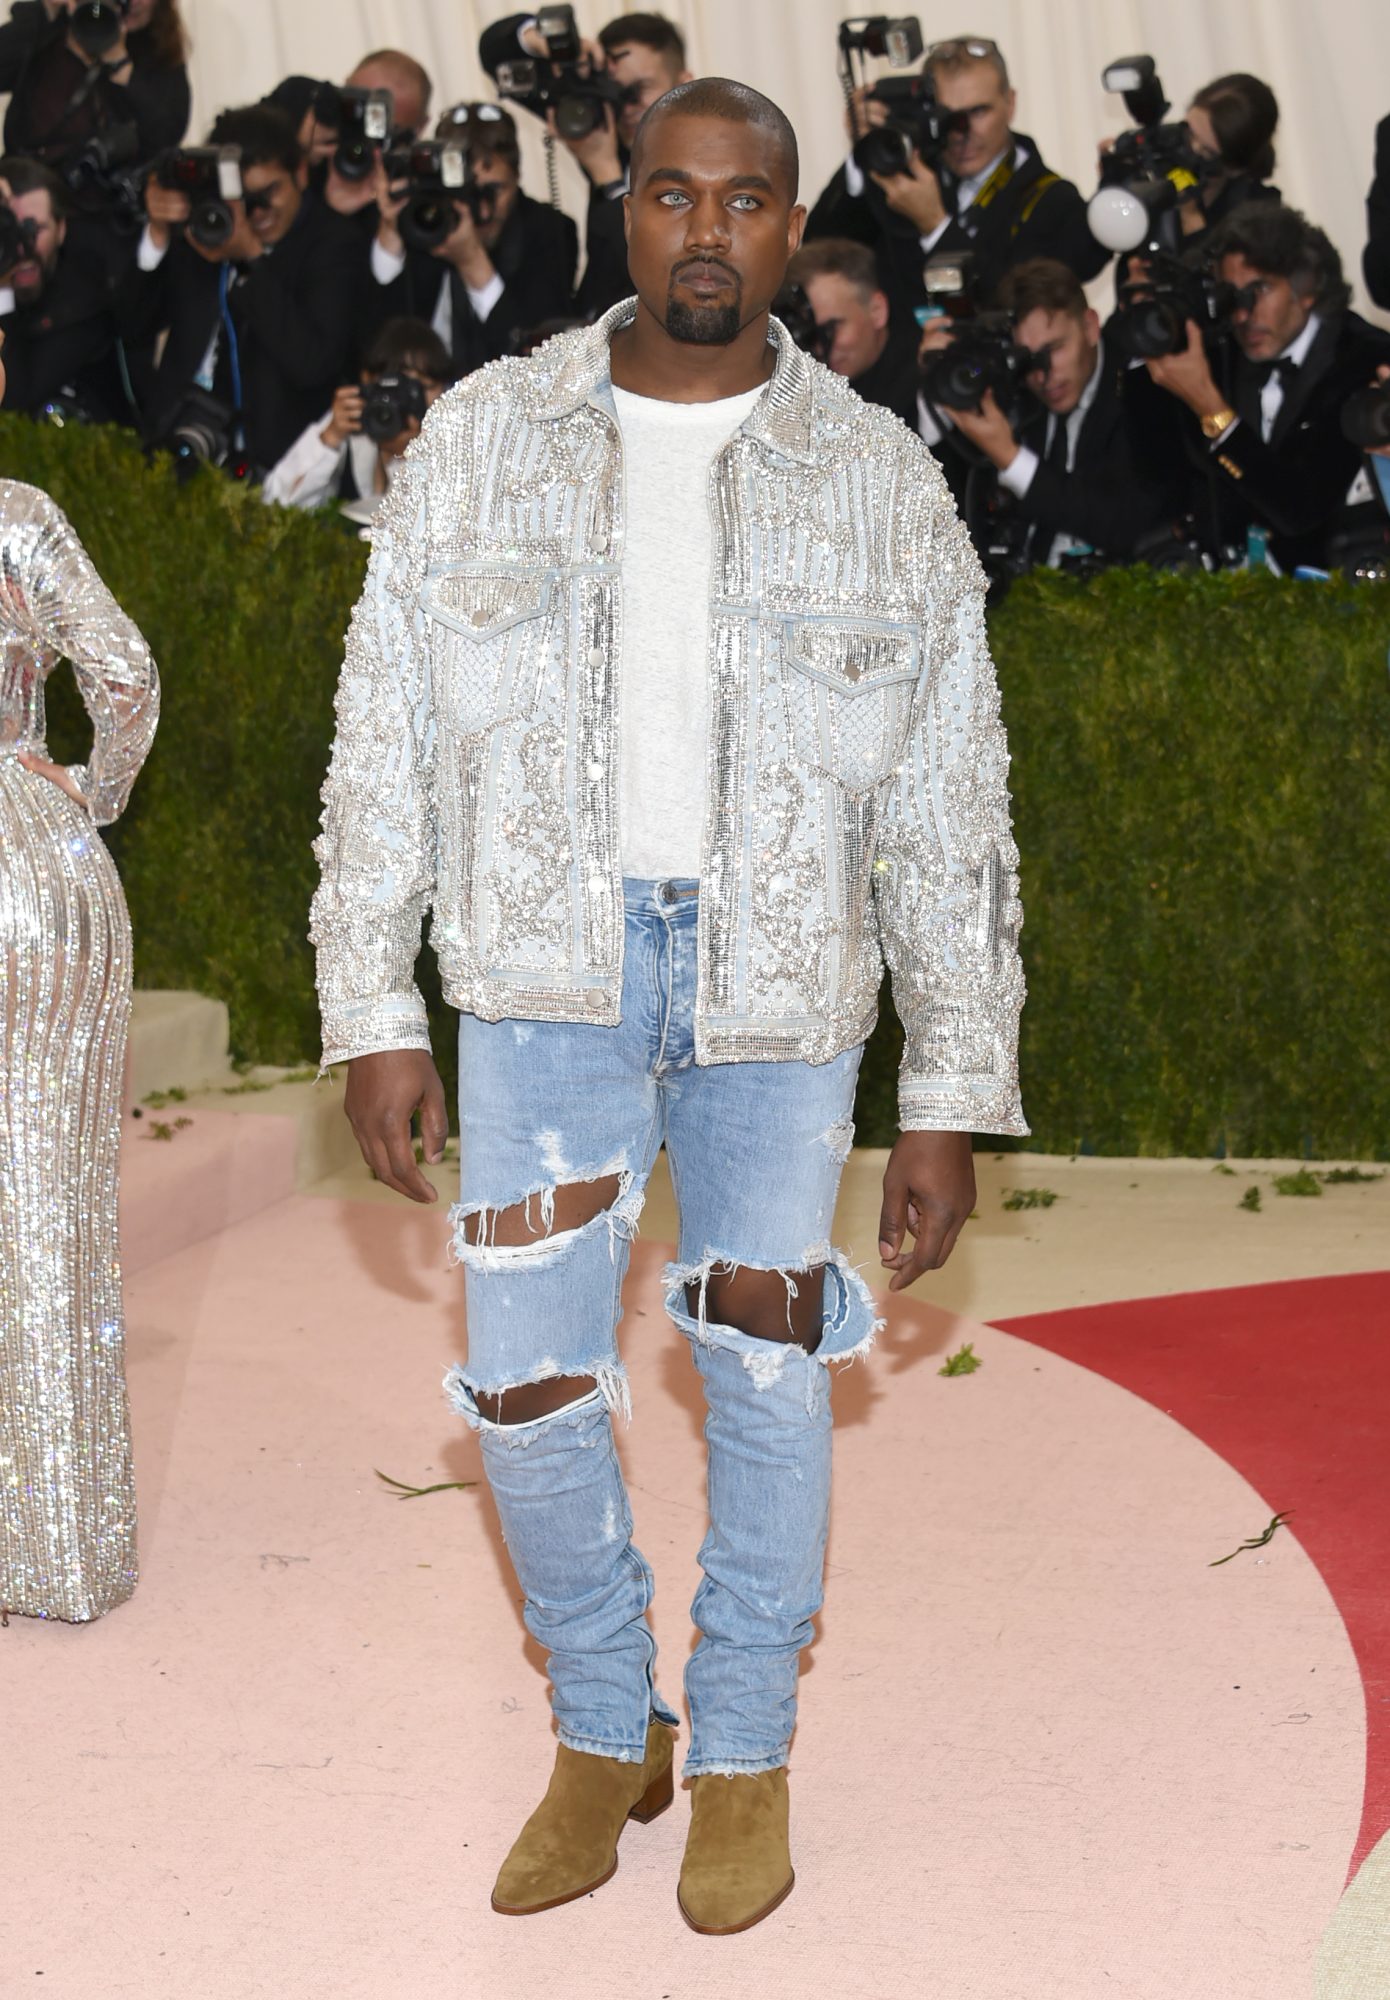 Kanye West's daughter North wore 2016 Met Gala Balmain jacket to Kardashian Christmas Eve party